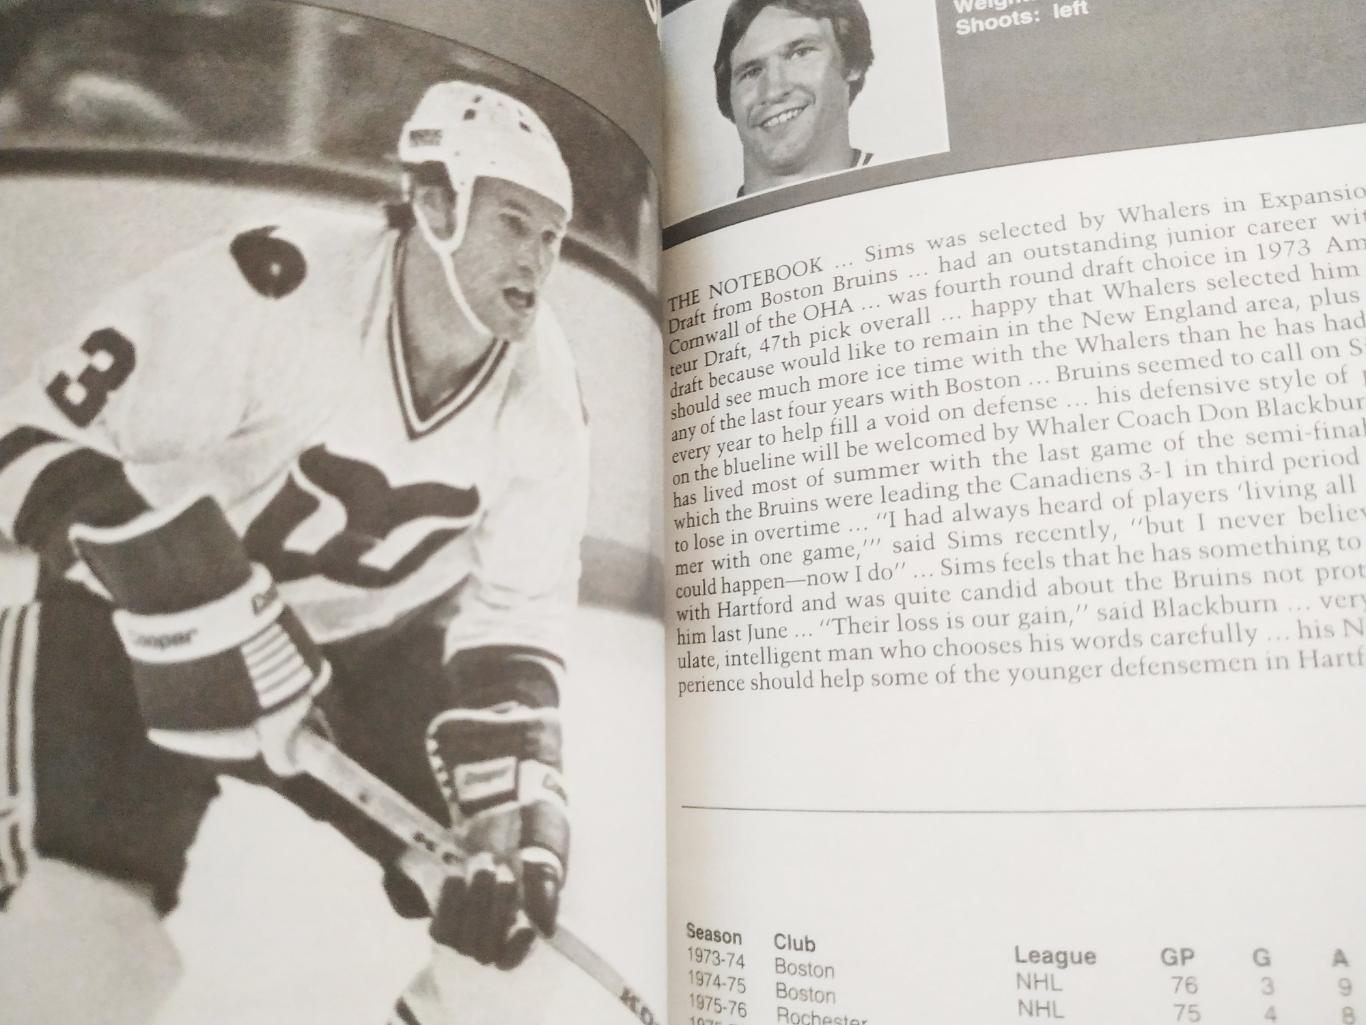 ХОККЕЙ СПРАВОЧНИК ЕЖЕГОДНИК НХЛ 1979-80 NHL HARTFORD WHALERS YEARBOOK GUIDE 3